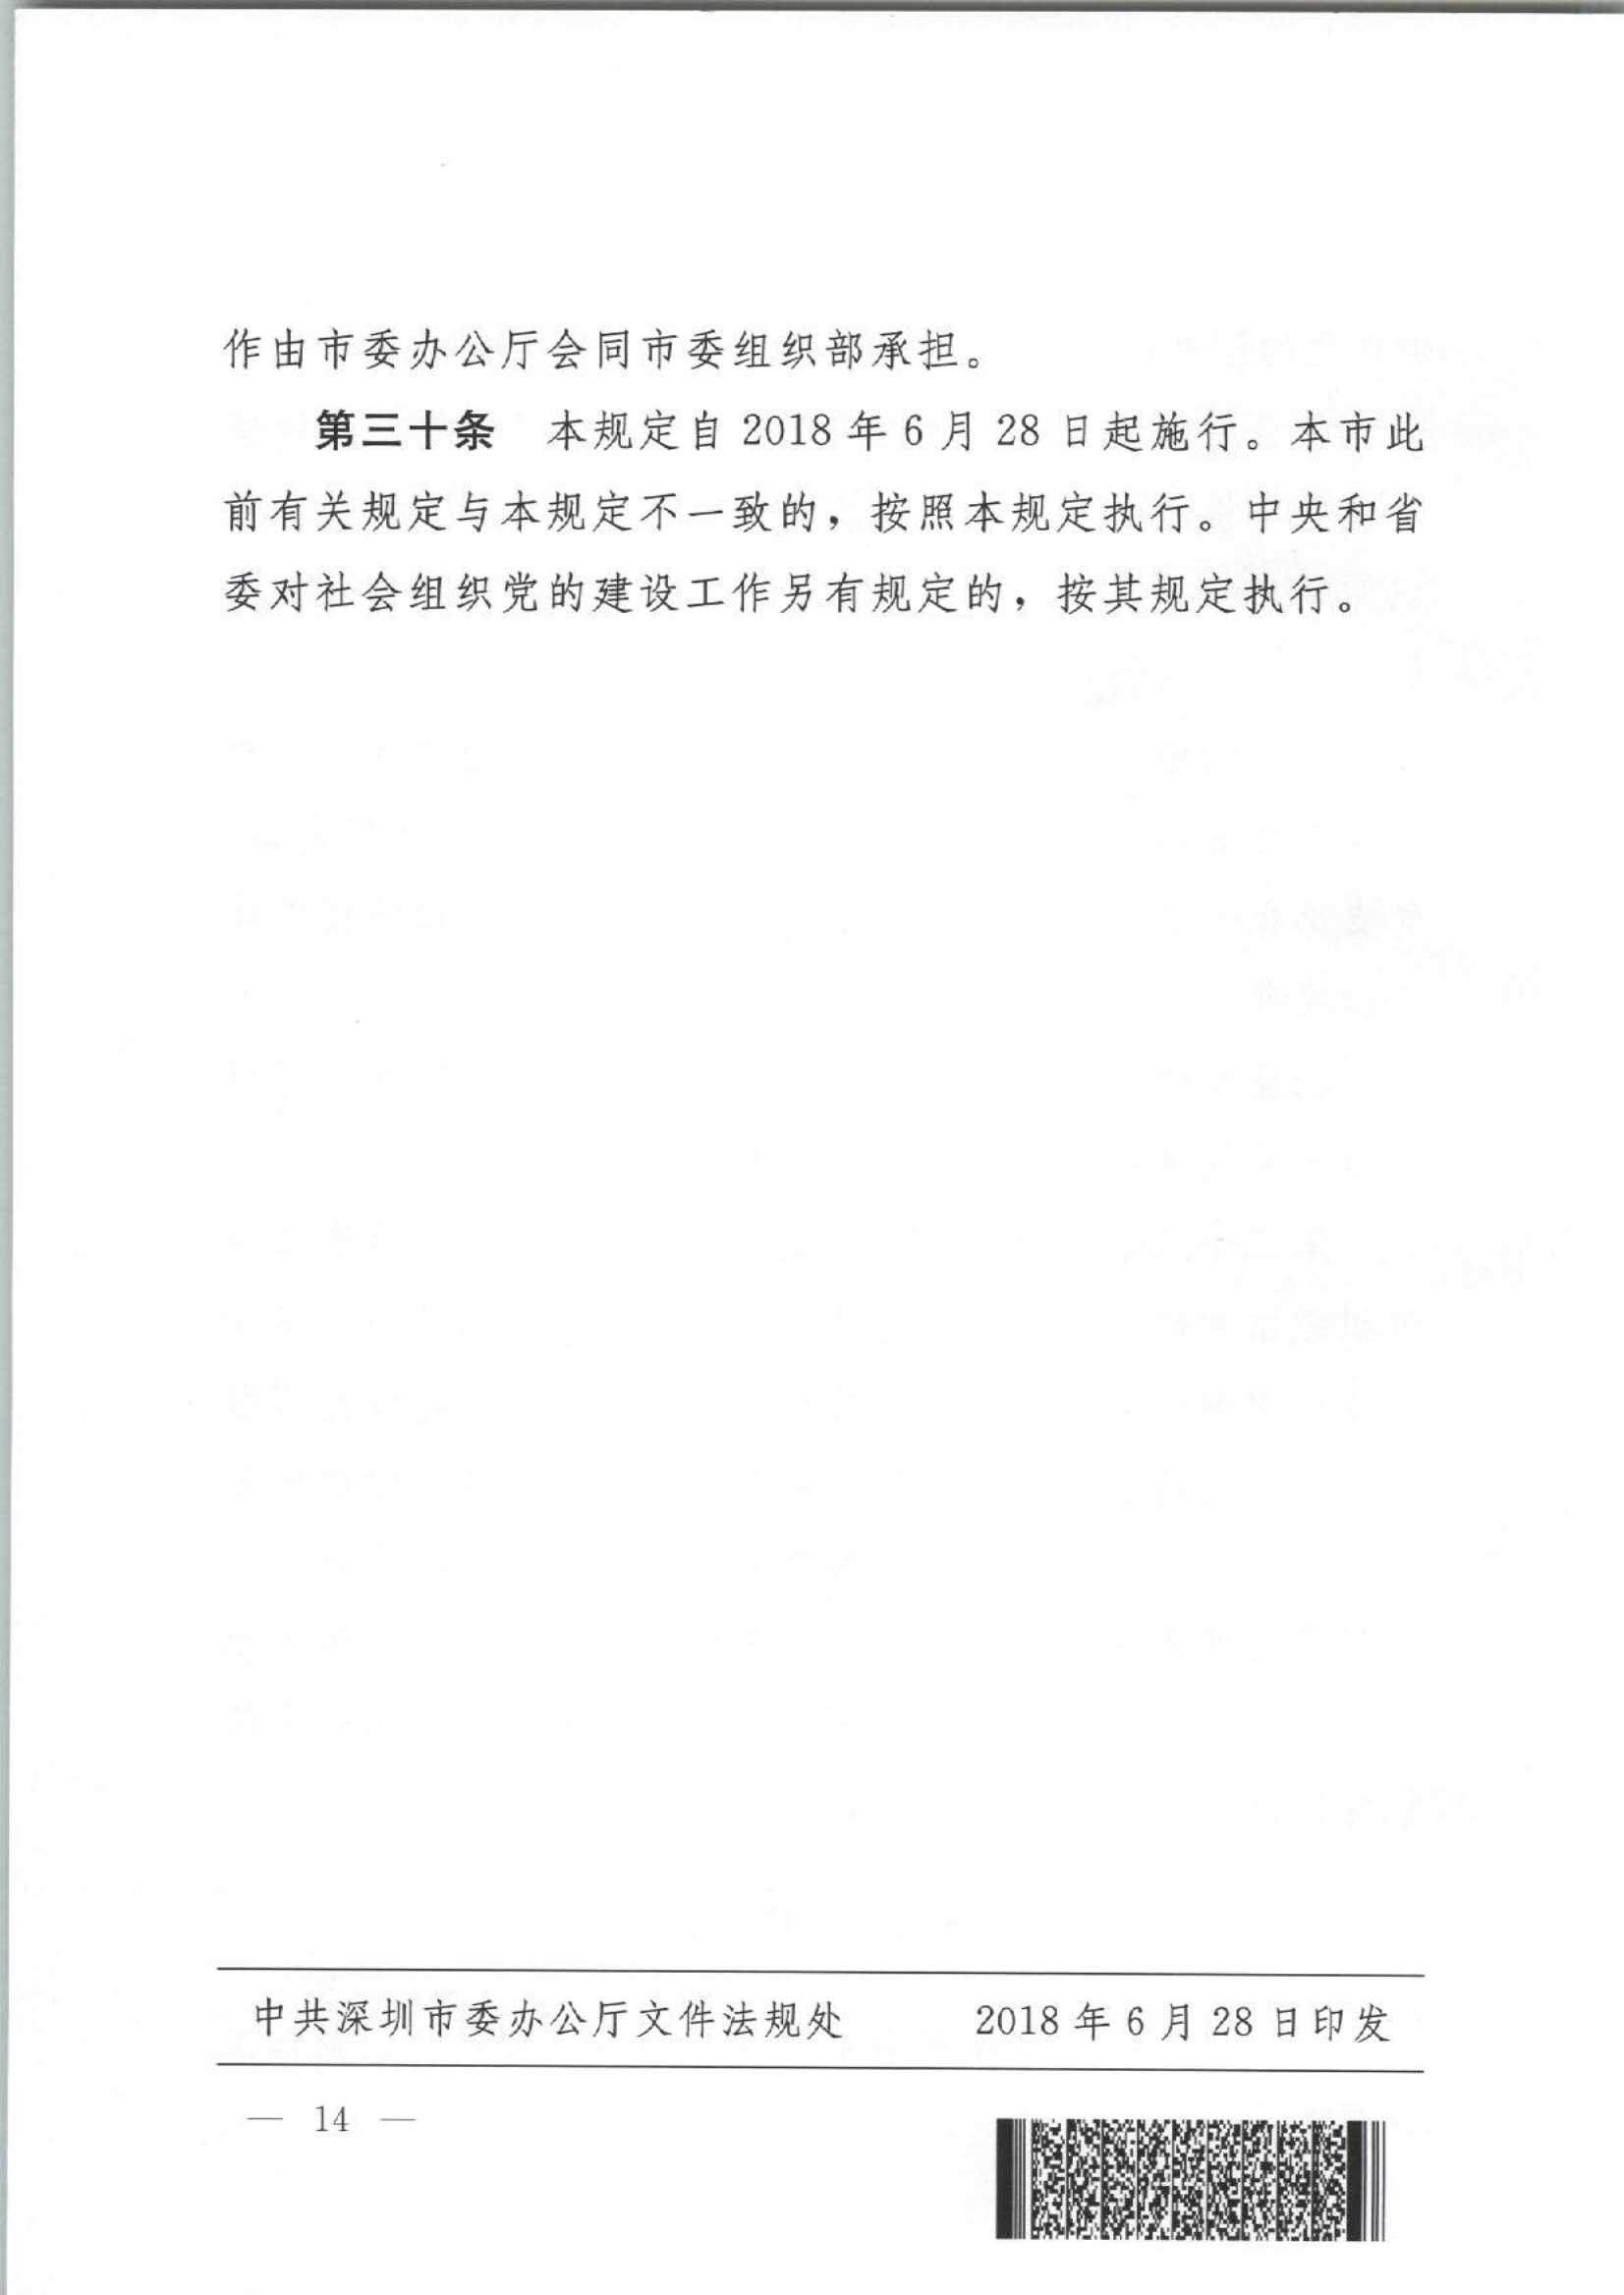 4.深圳市社会组织党的建设工作规定_14.Jpeg